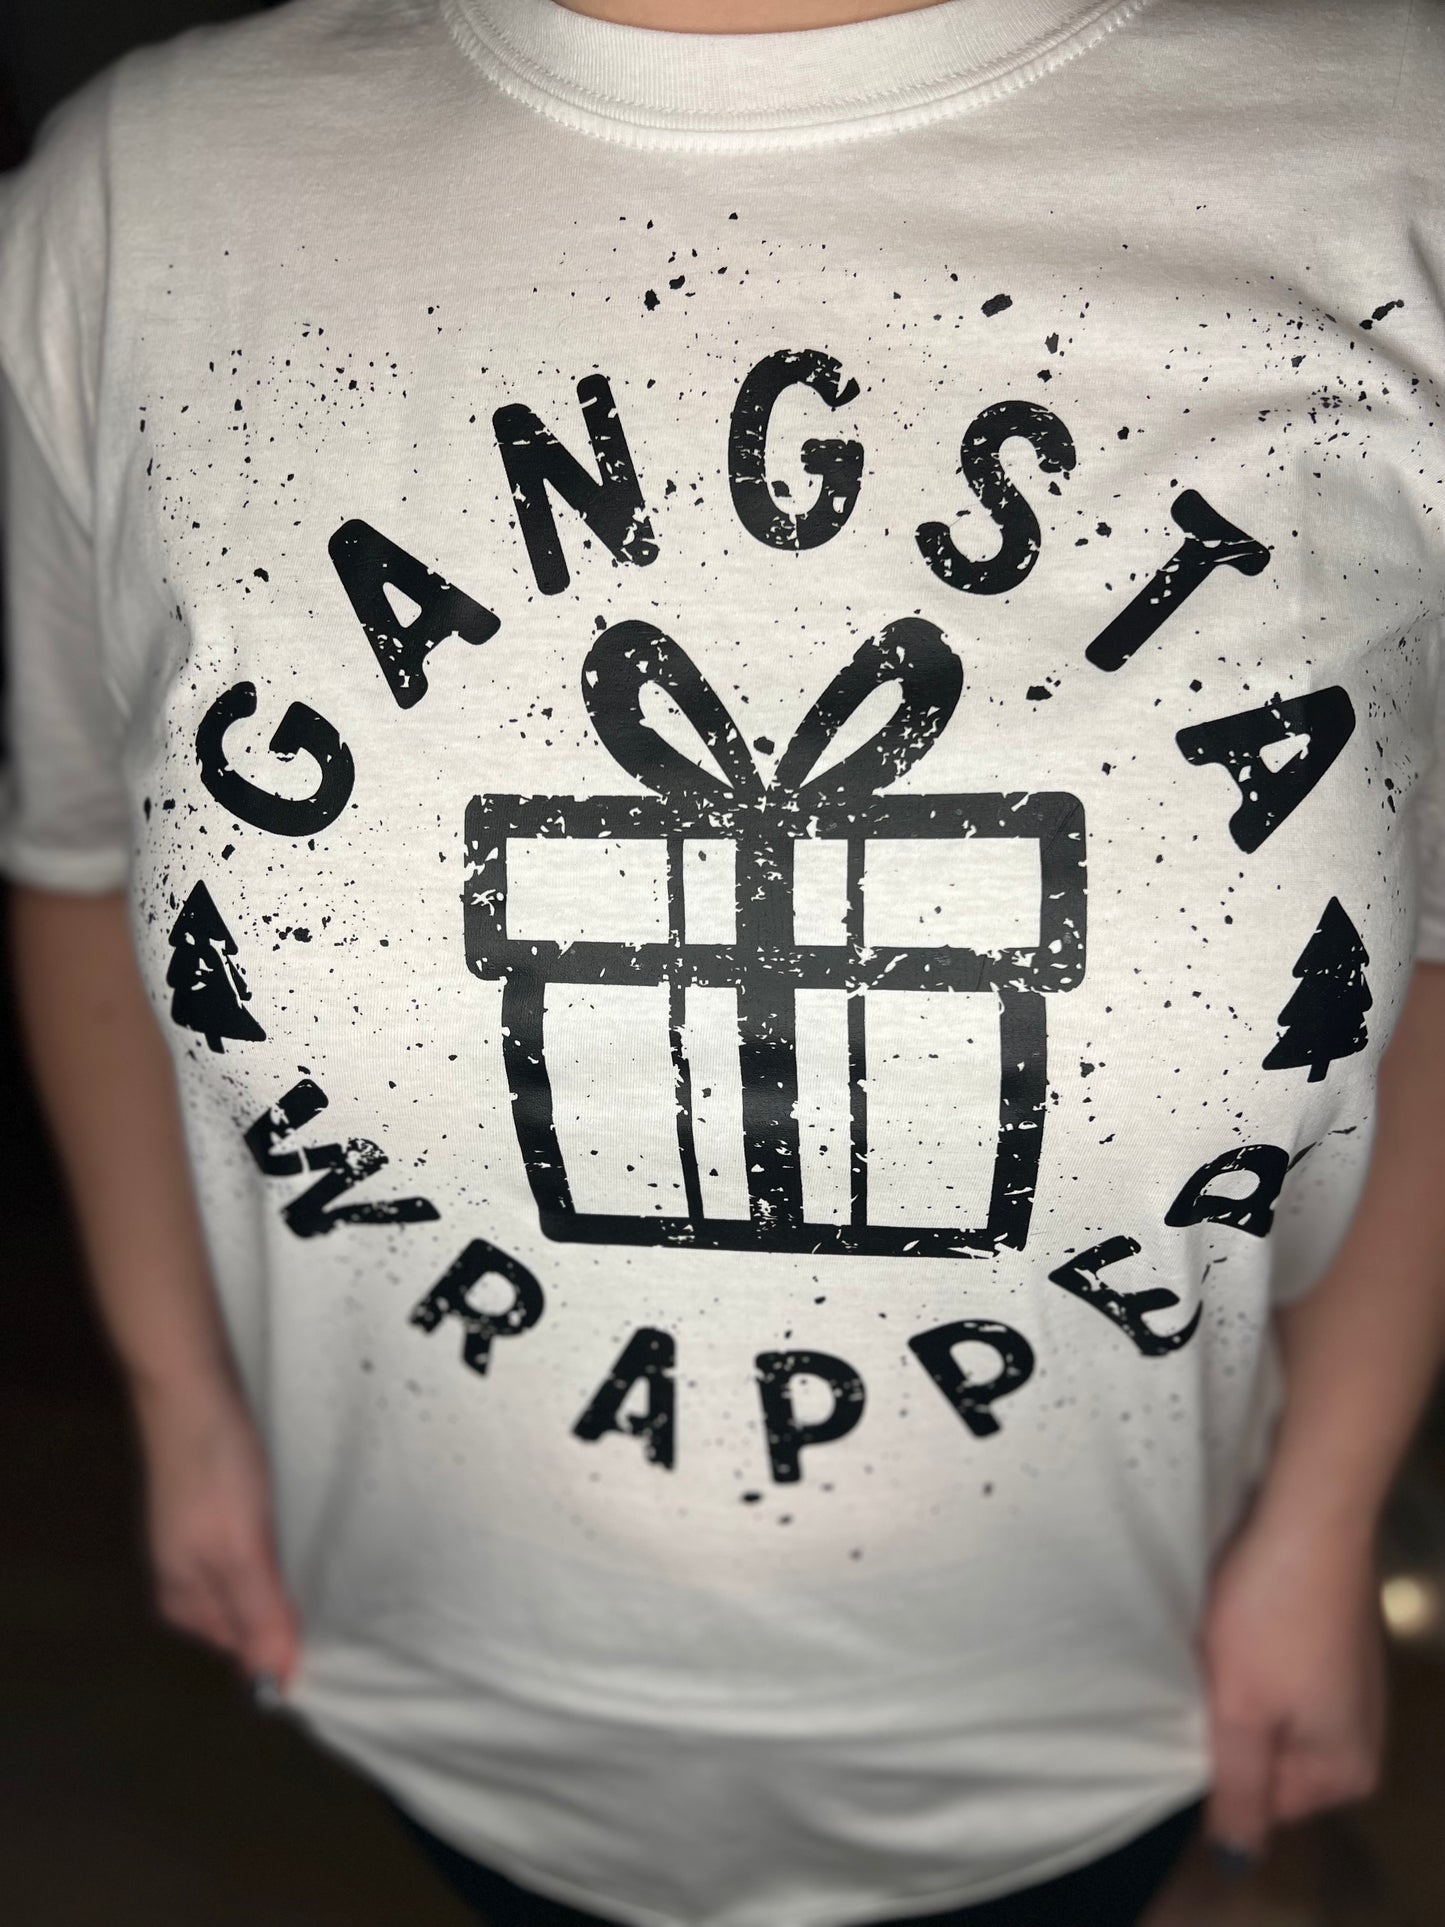 Gangsta Wrapper Tee